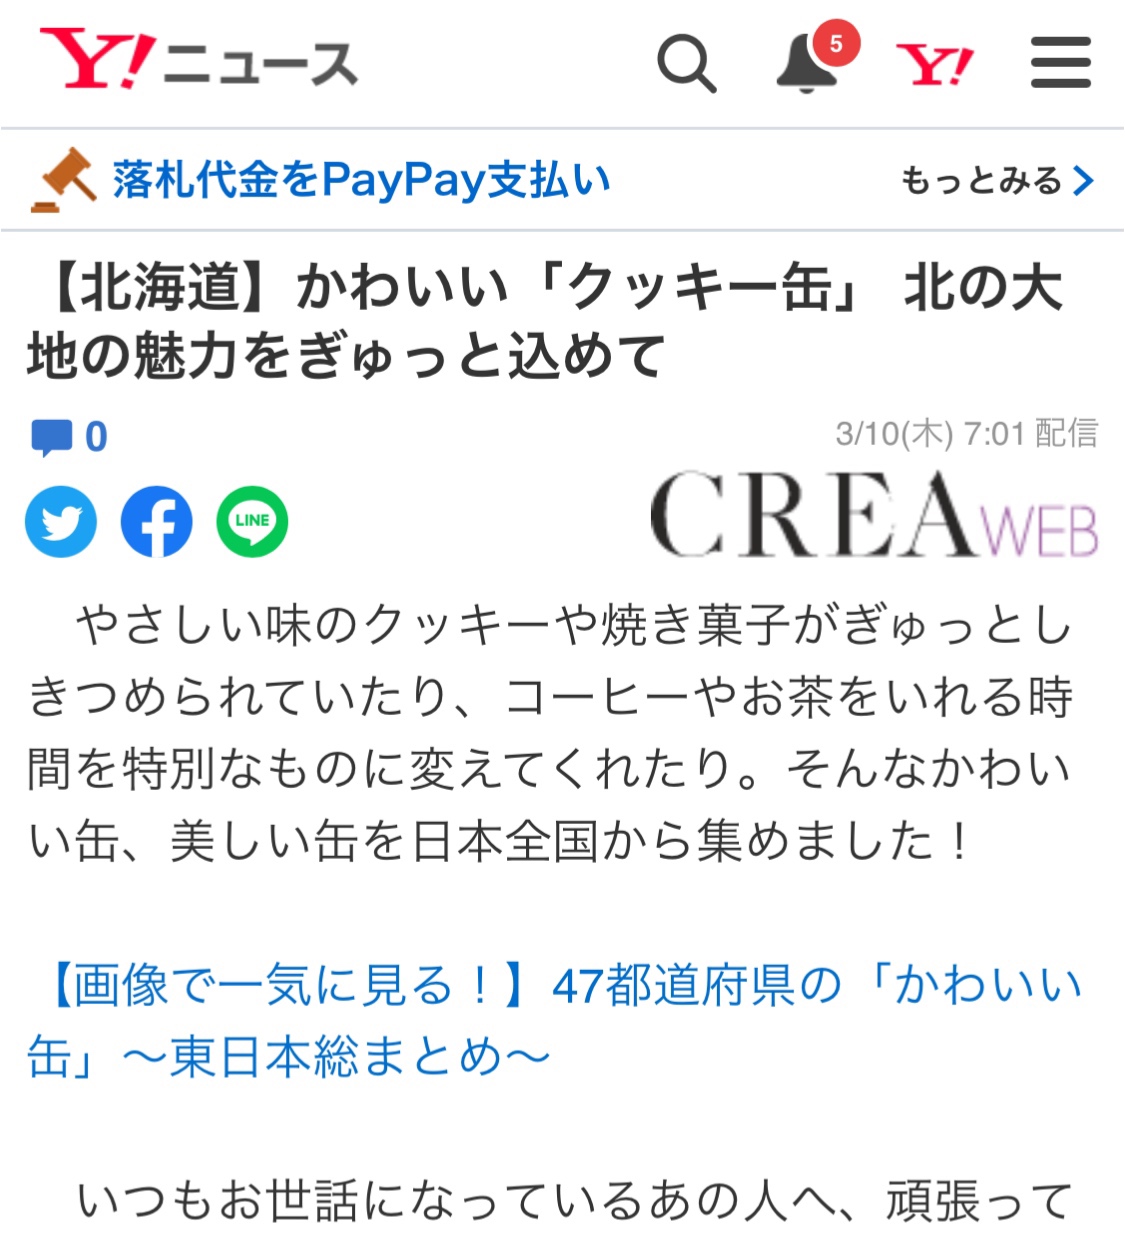 【北海道】「かわいい缶」特集の記事がYahooニュースで取り上げられました。